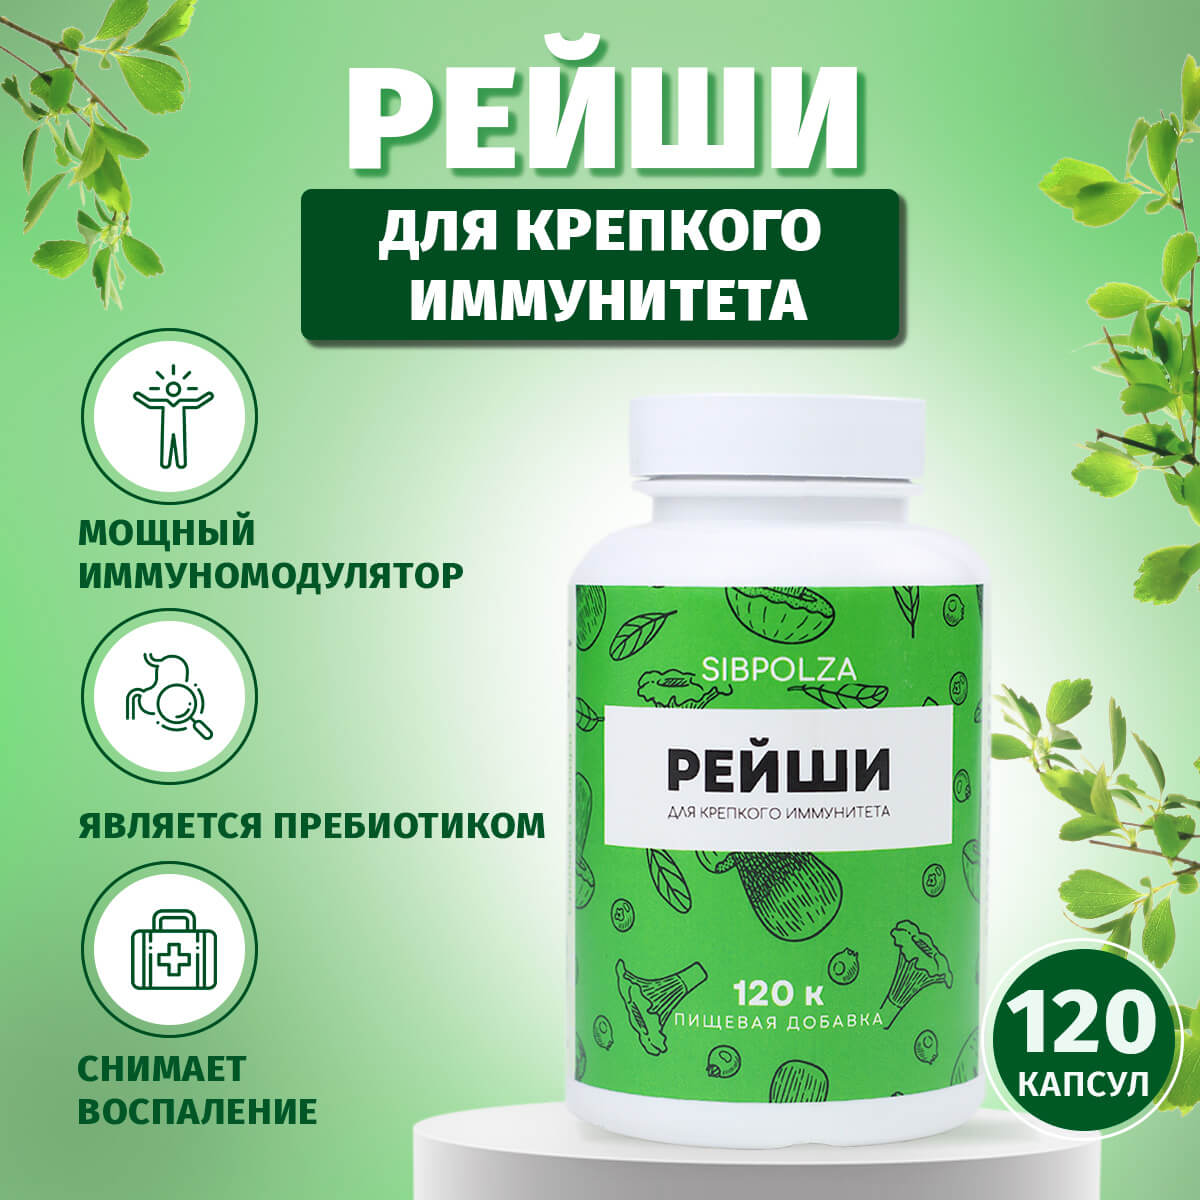 Рейши для крепкого иммунитета, пищевая добавка Sibpolza , 120 капсул, СИБИОПРО